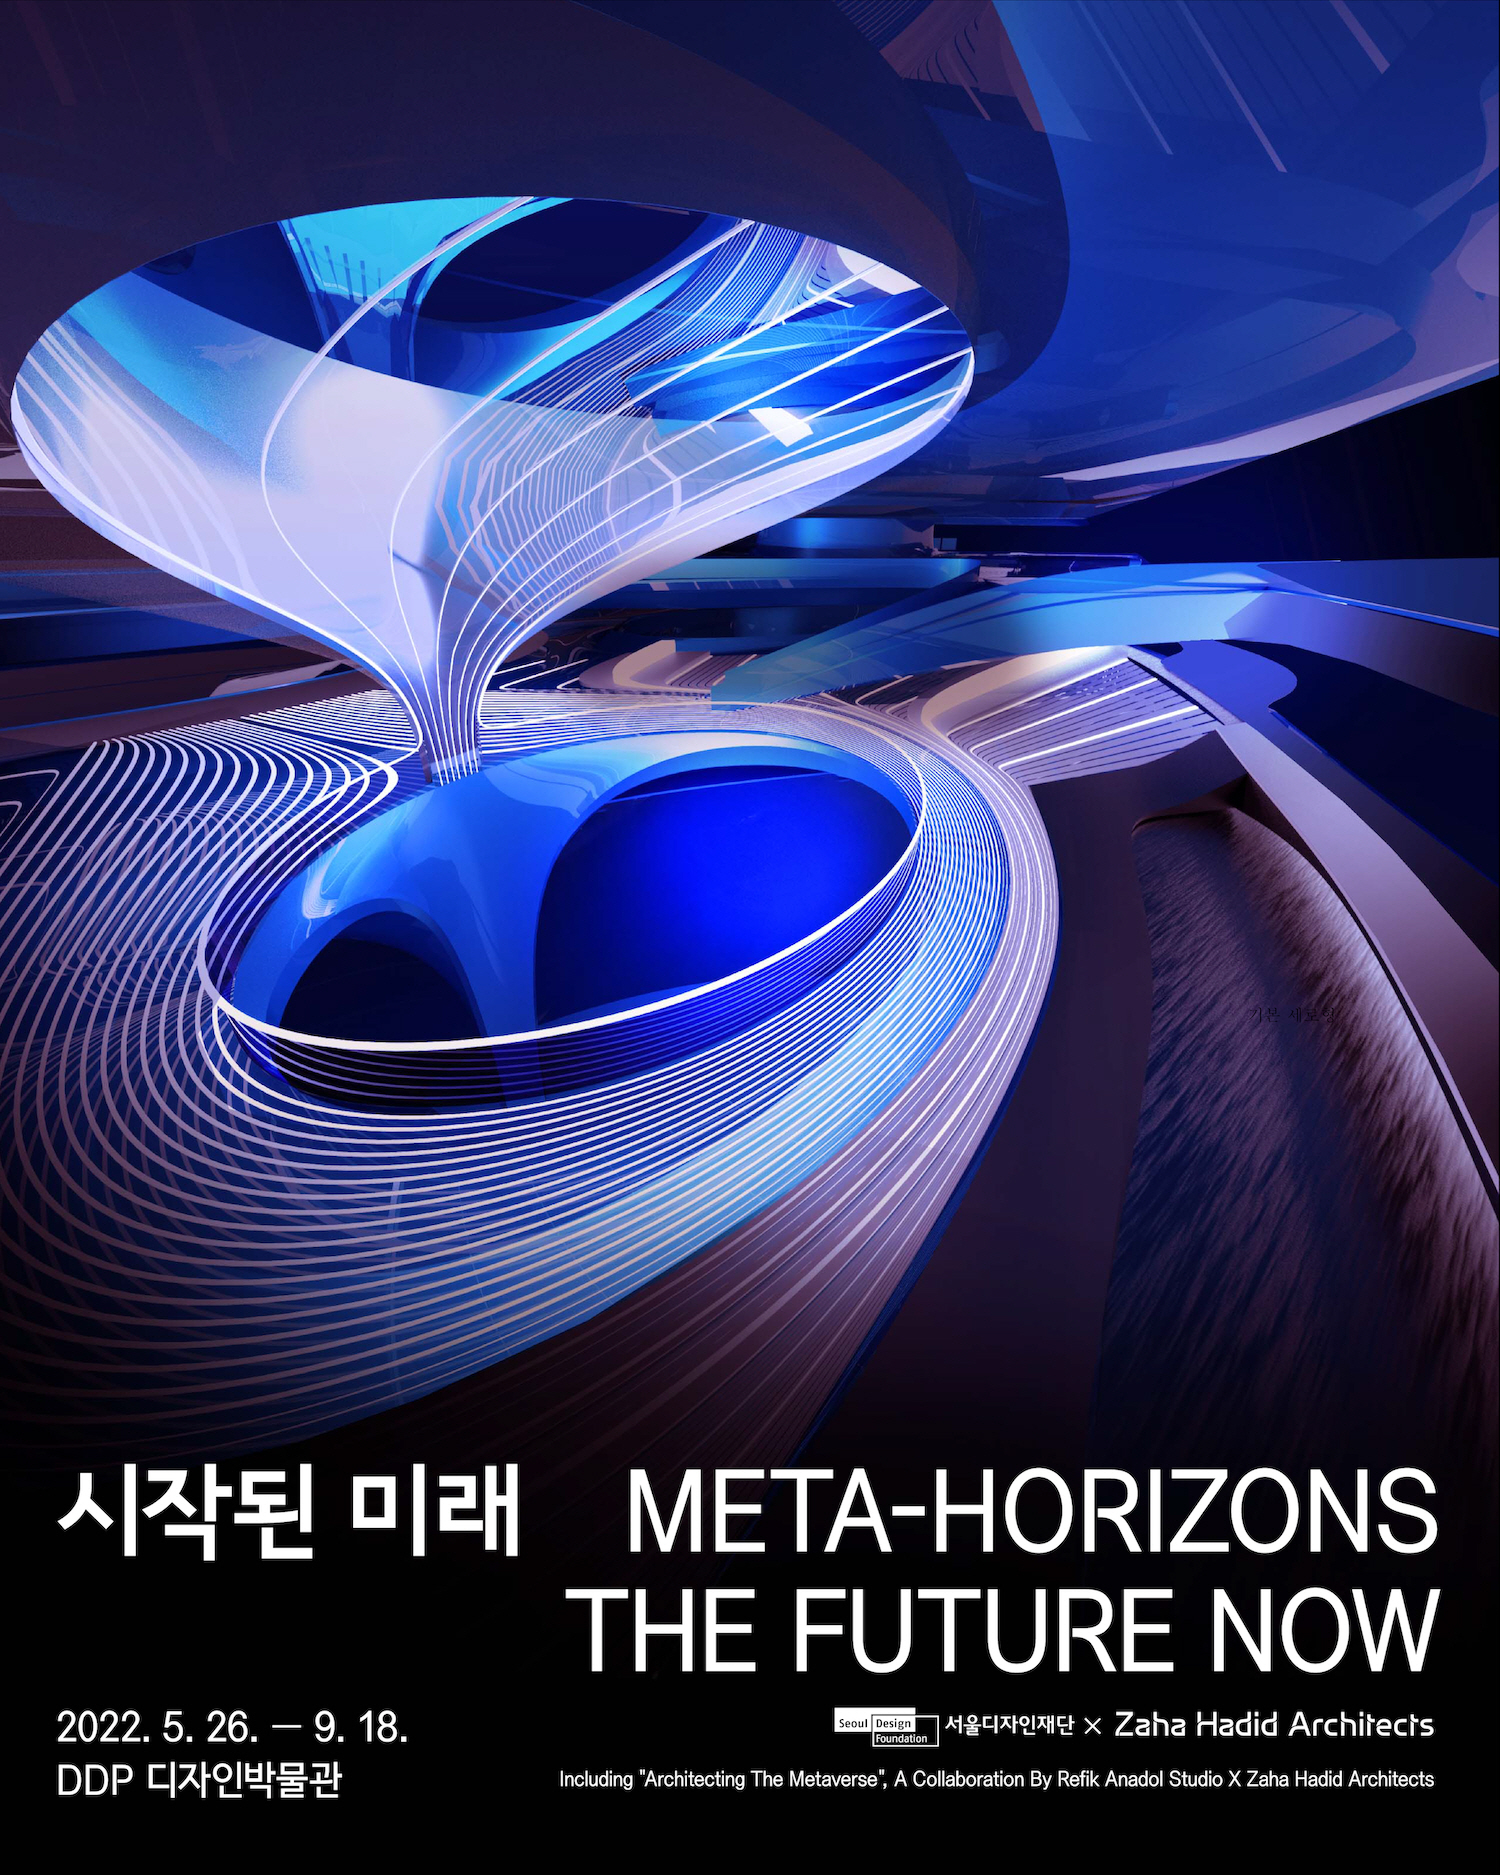 已開啟的未來 Meta-Horizons : The Future Now